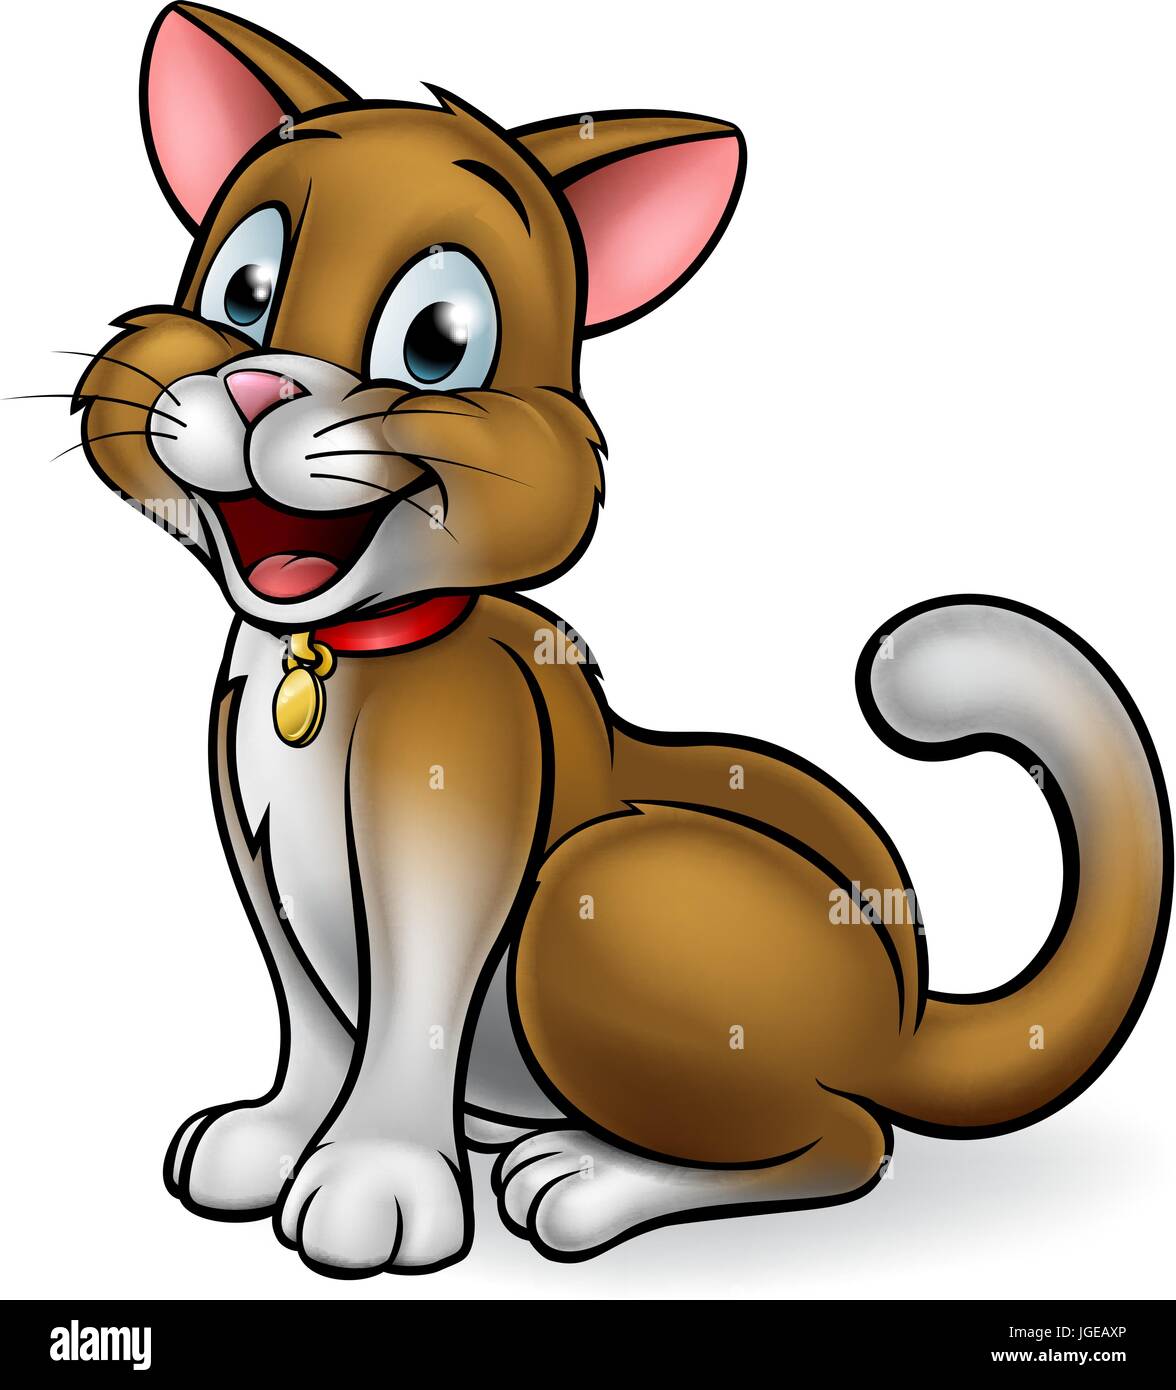 Cartoon Pet Cat Mascot Stock Vector